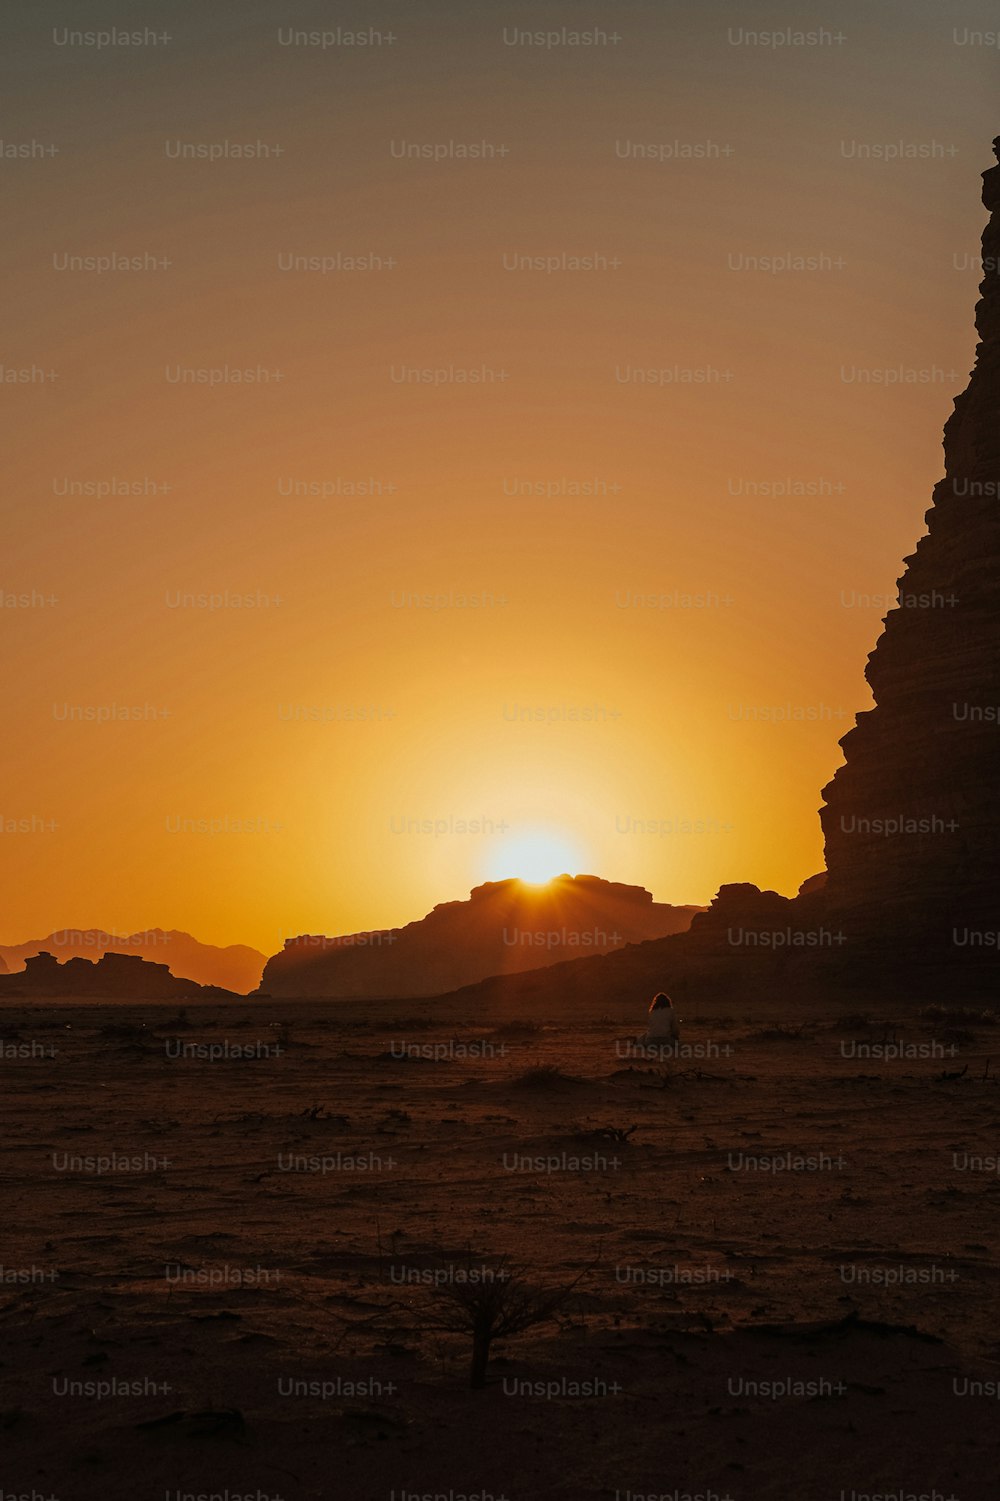 Il sole sta tramontando dietro una piramide nel deserto